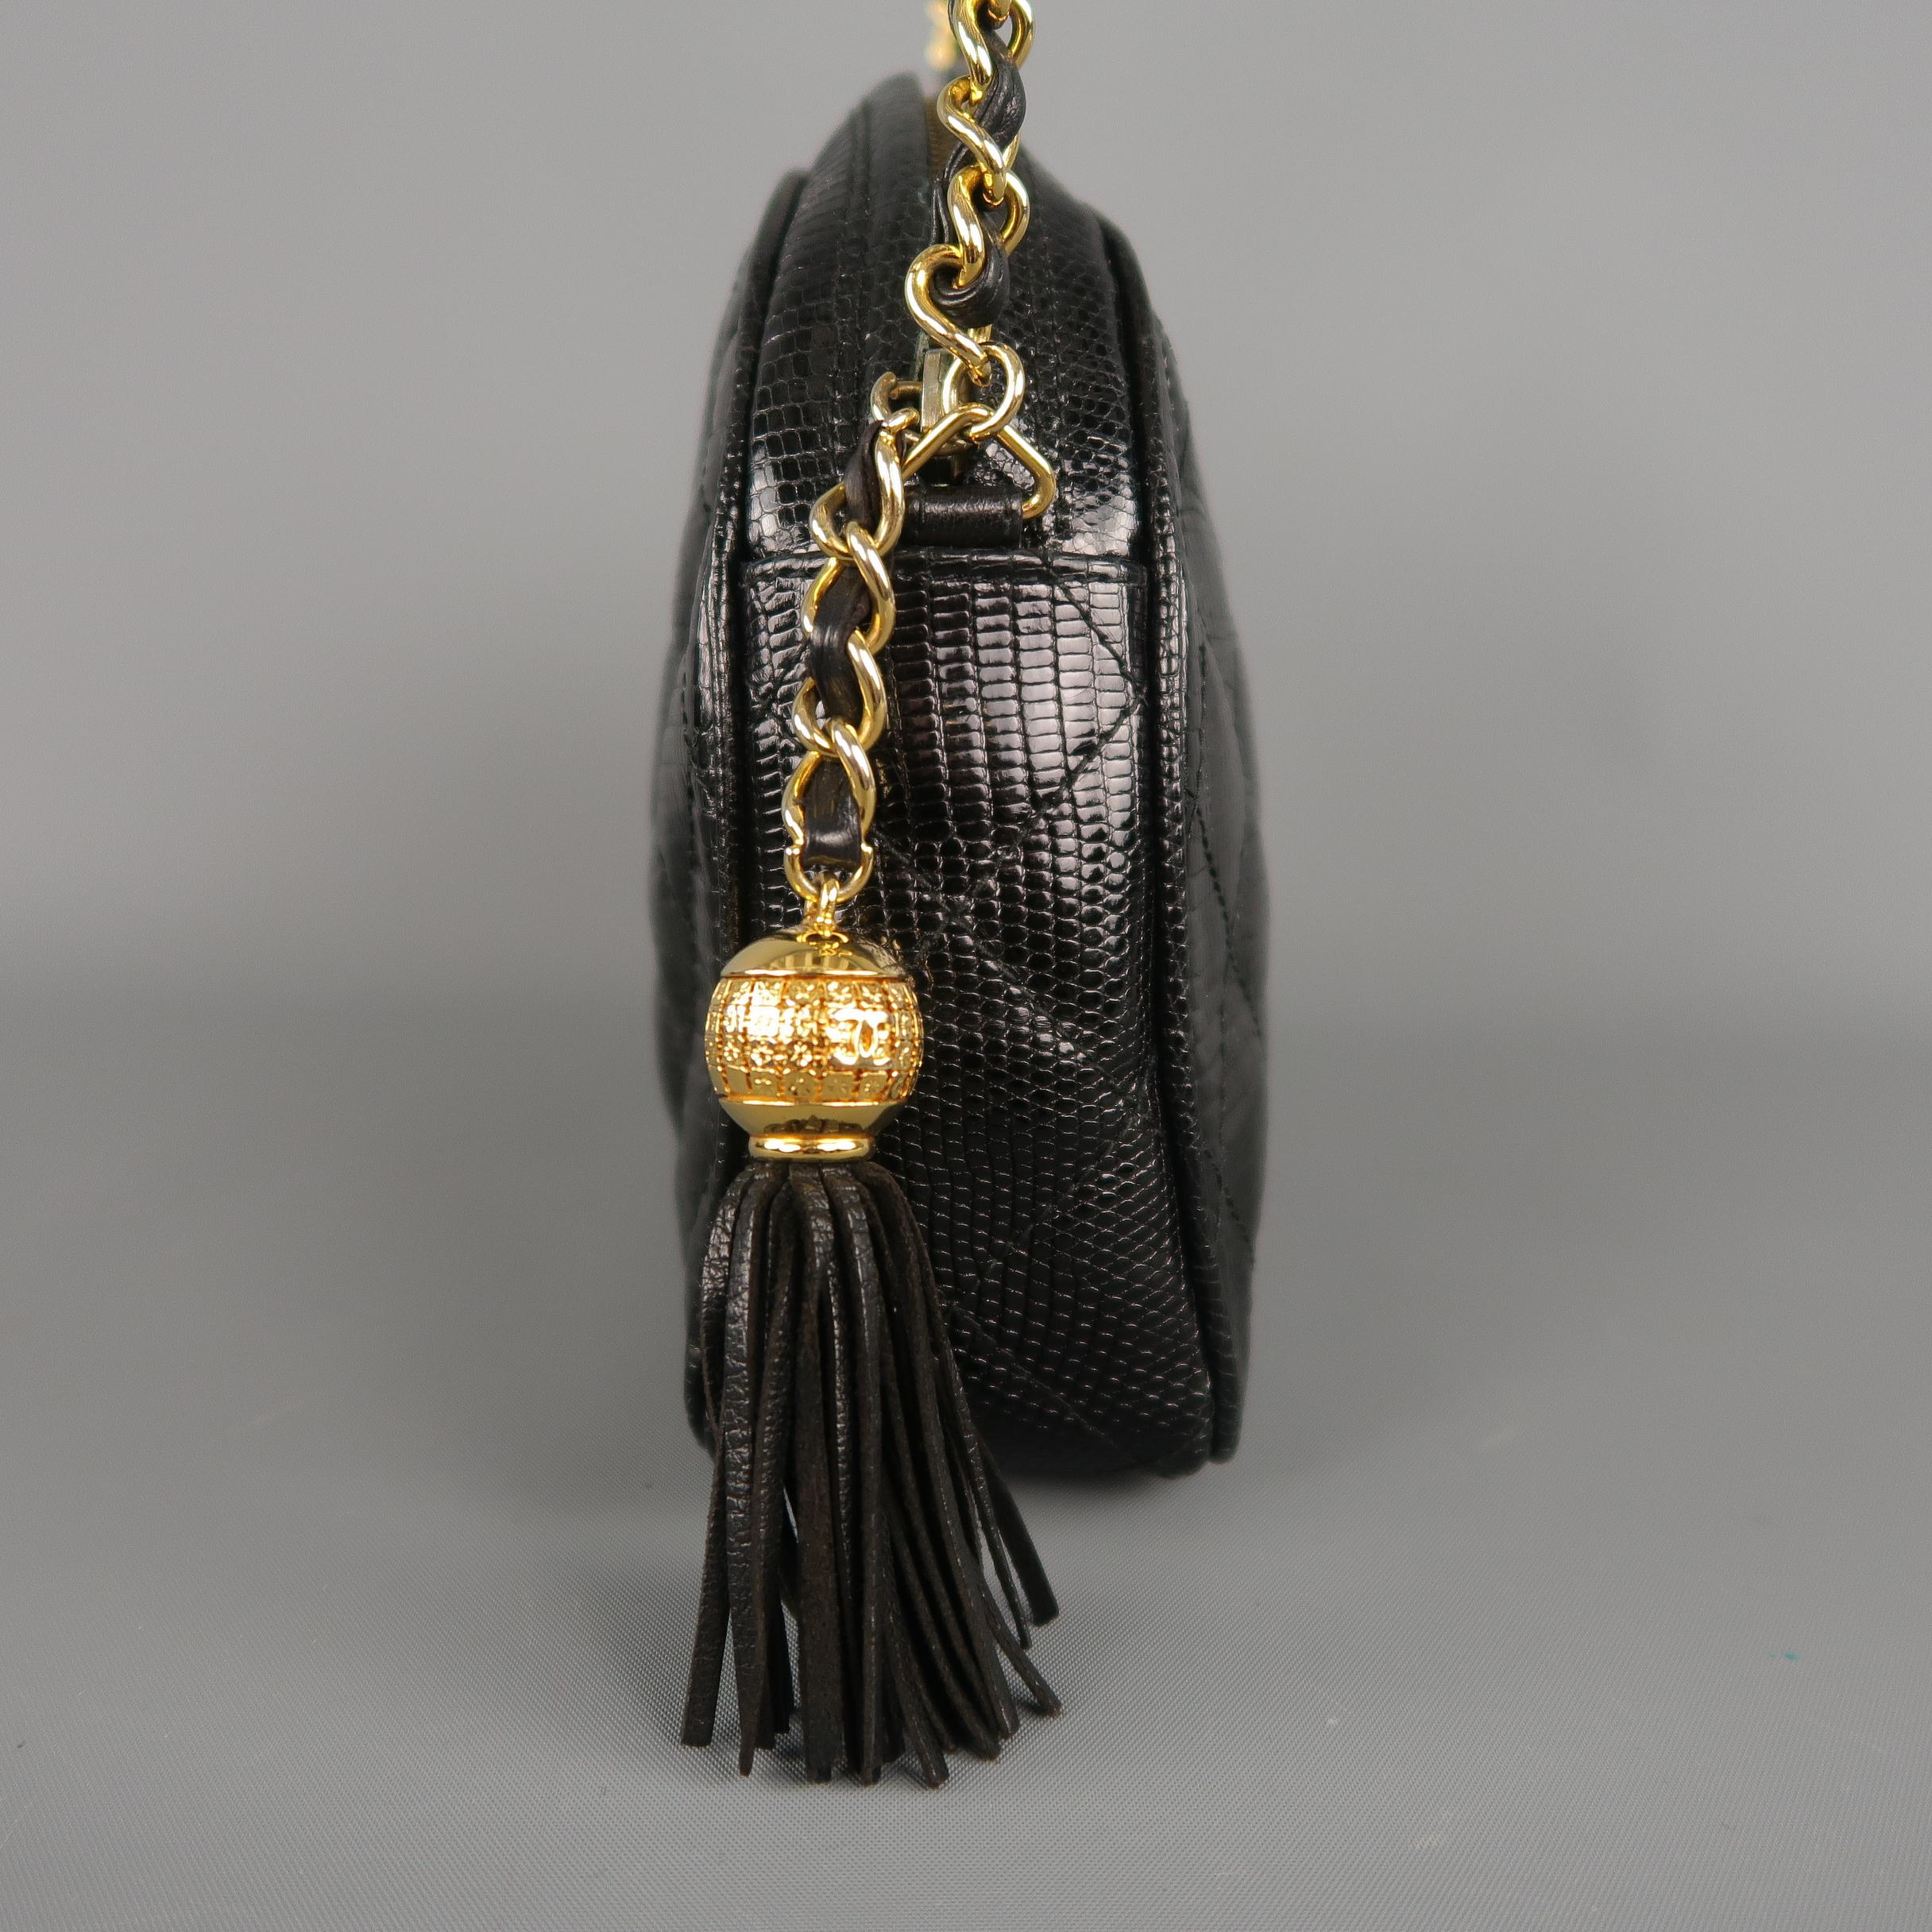 Vintage CHANEL Black Quilted Lizard Leather Gold Chain Strap Shoulder Handbag 5